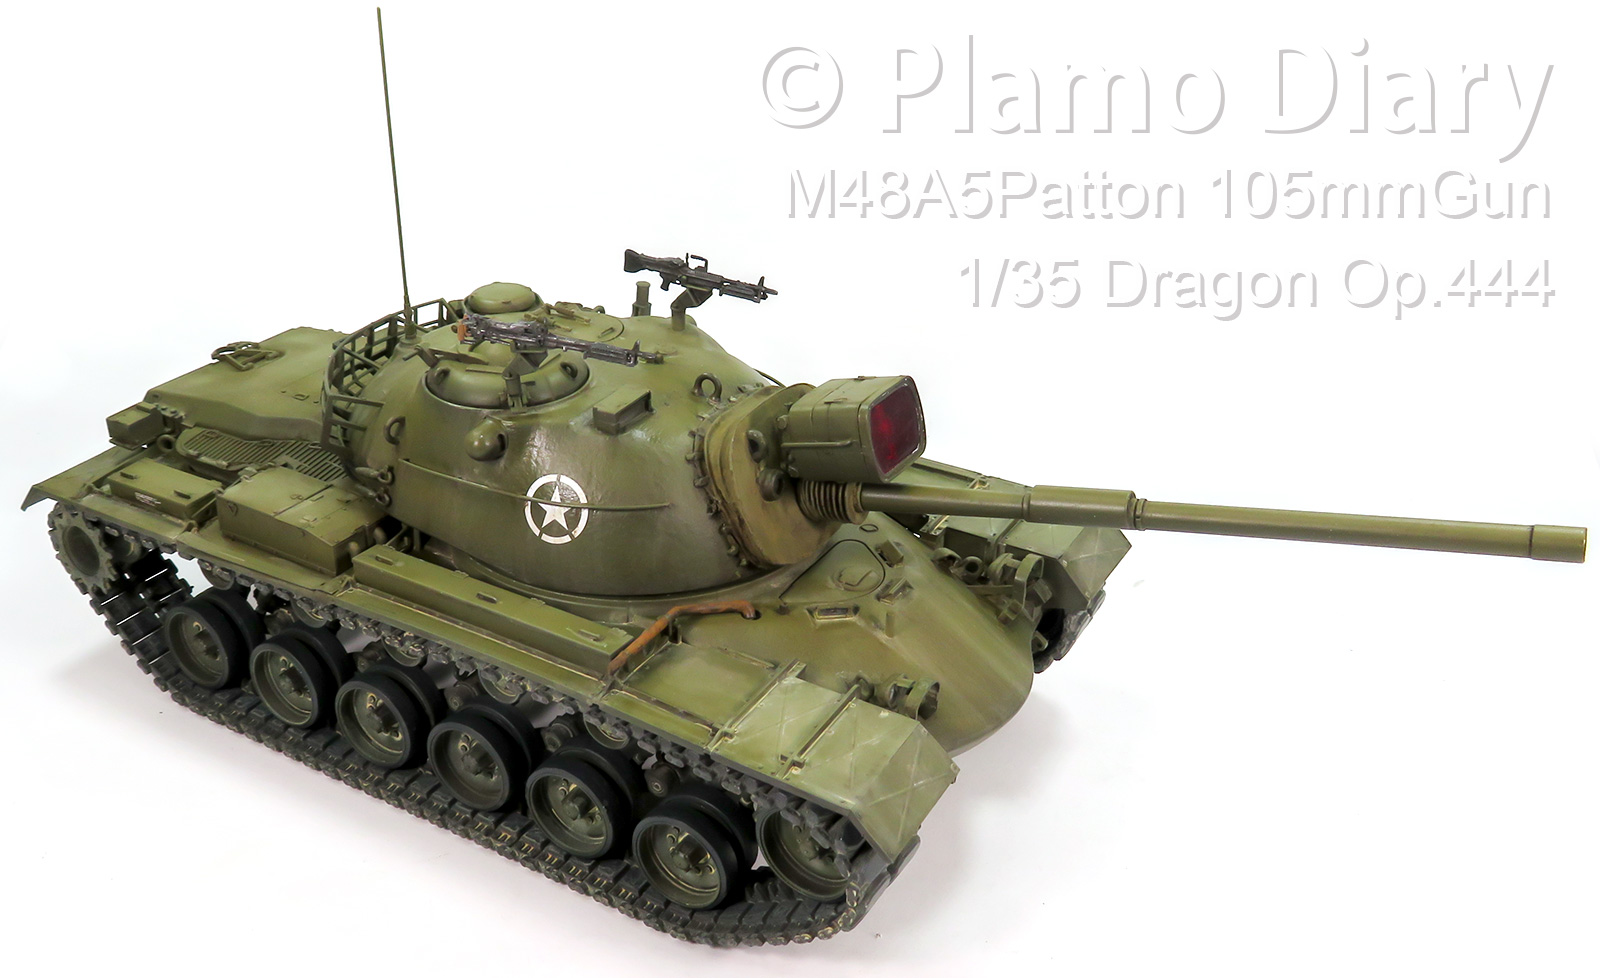 アメリカ・M48A5パットン 105mm砲 1/35 ドラゴン